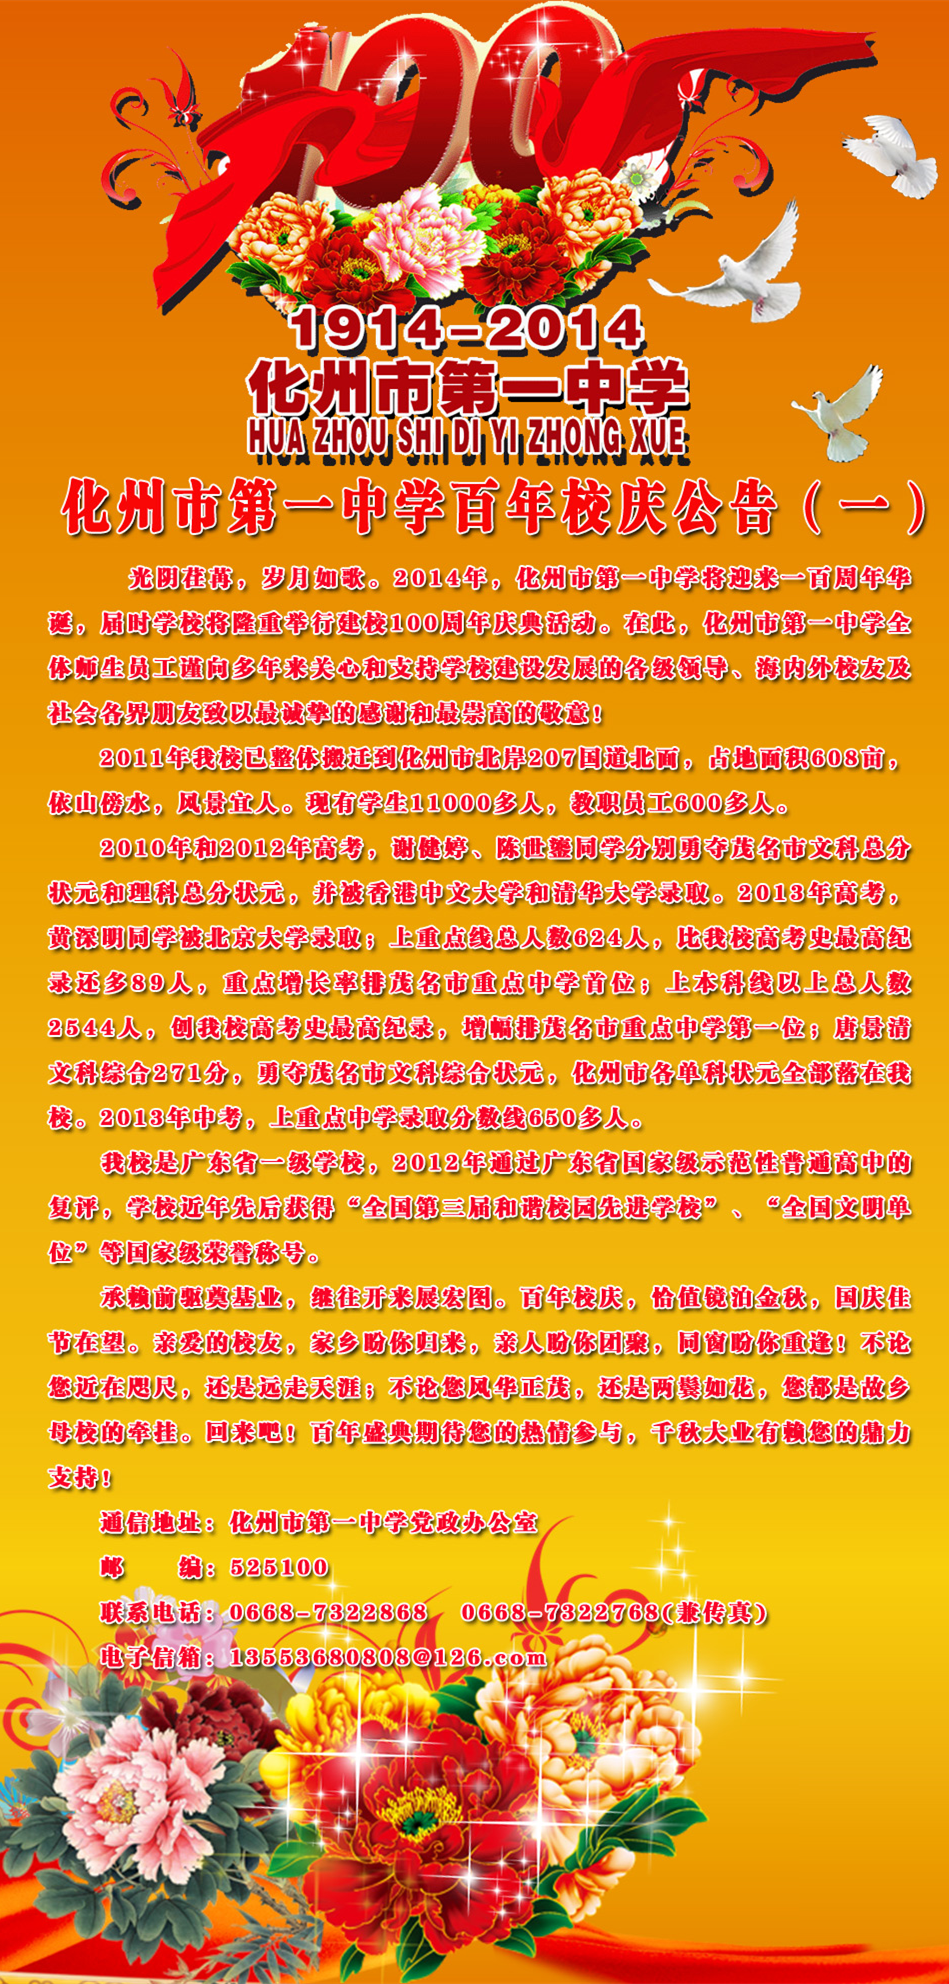 1914~2014，化州市第一中学百年校庆活动通知 - 化州信息网